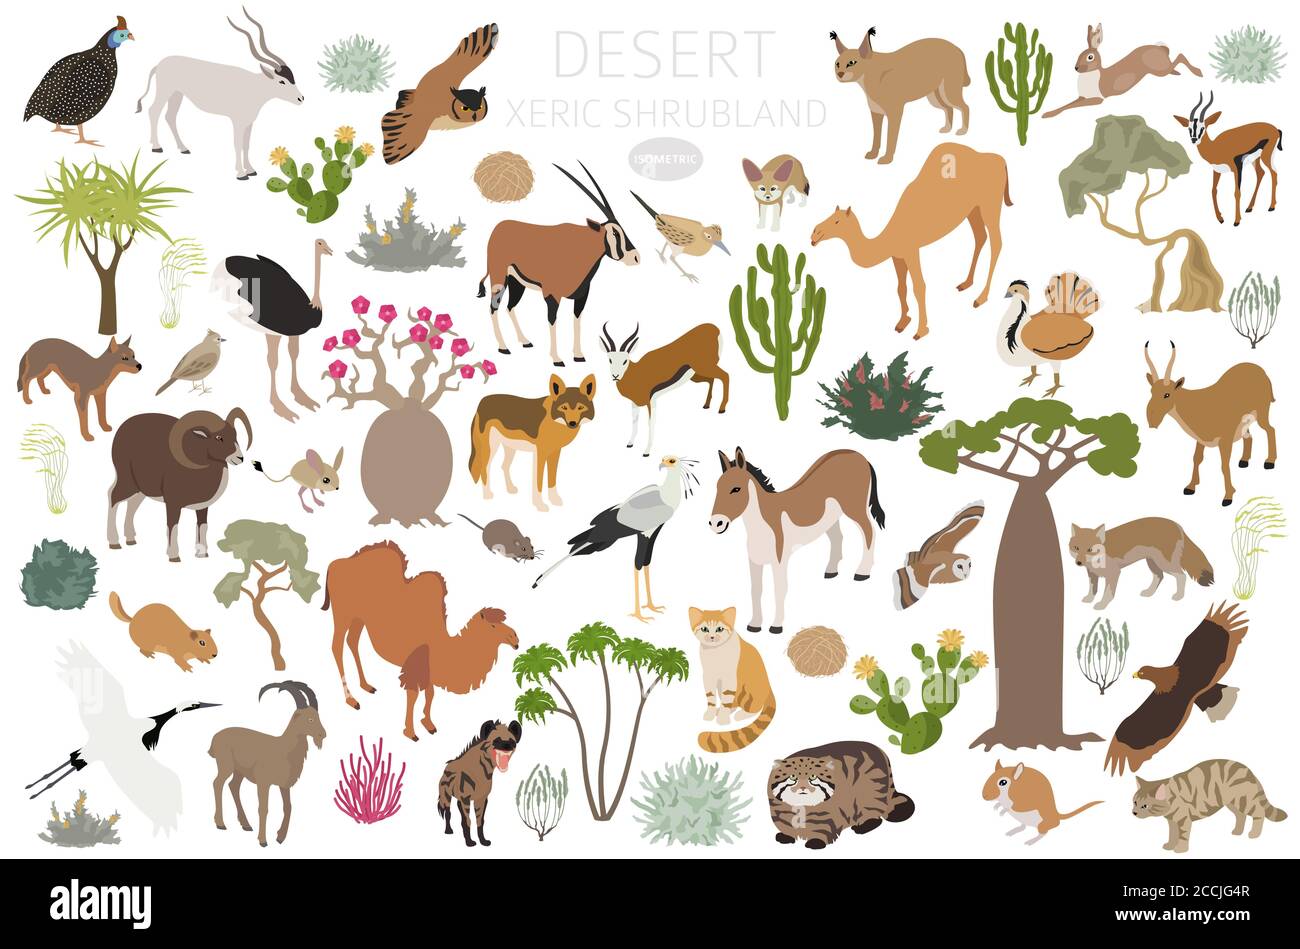 Bioma del deserto, bioma xerico del shrubland, infografica della regione naturale. Mappa mondiale dell'ecosistema terrestre. Animali, uccelli e vegetazioni Set isometrico. Illustrazione Vettoriale